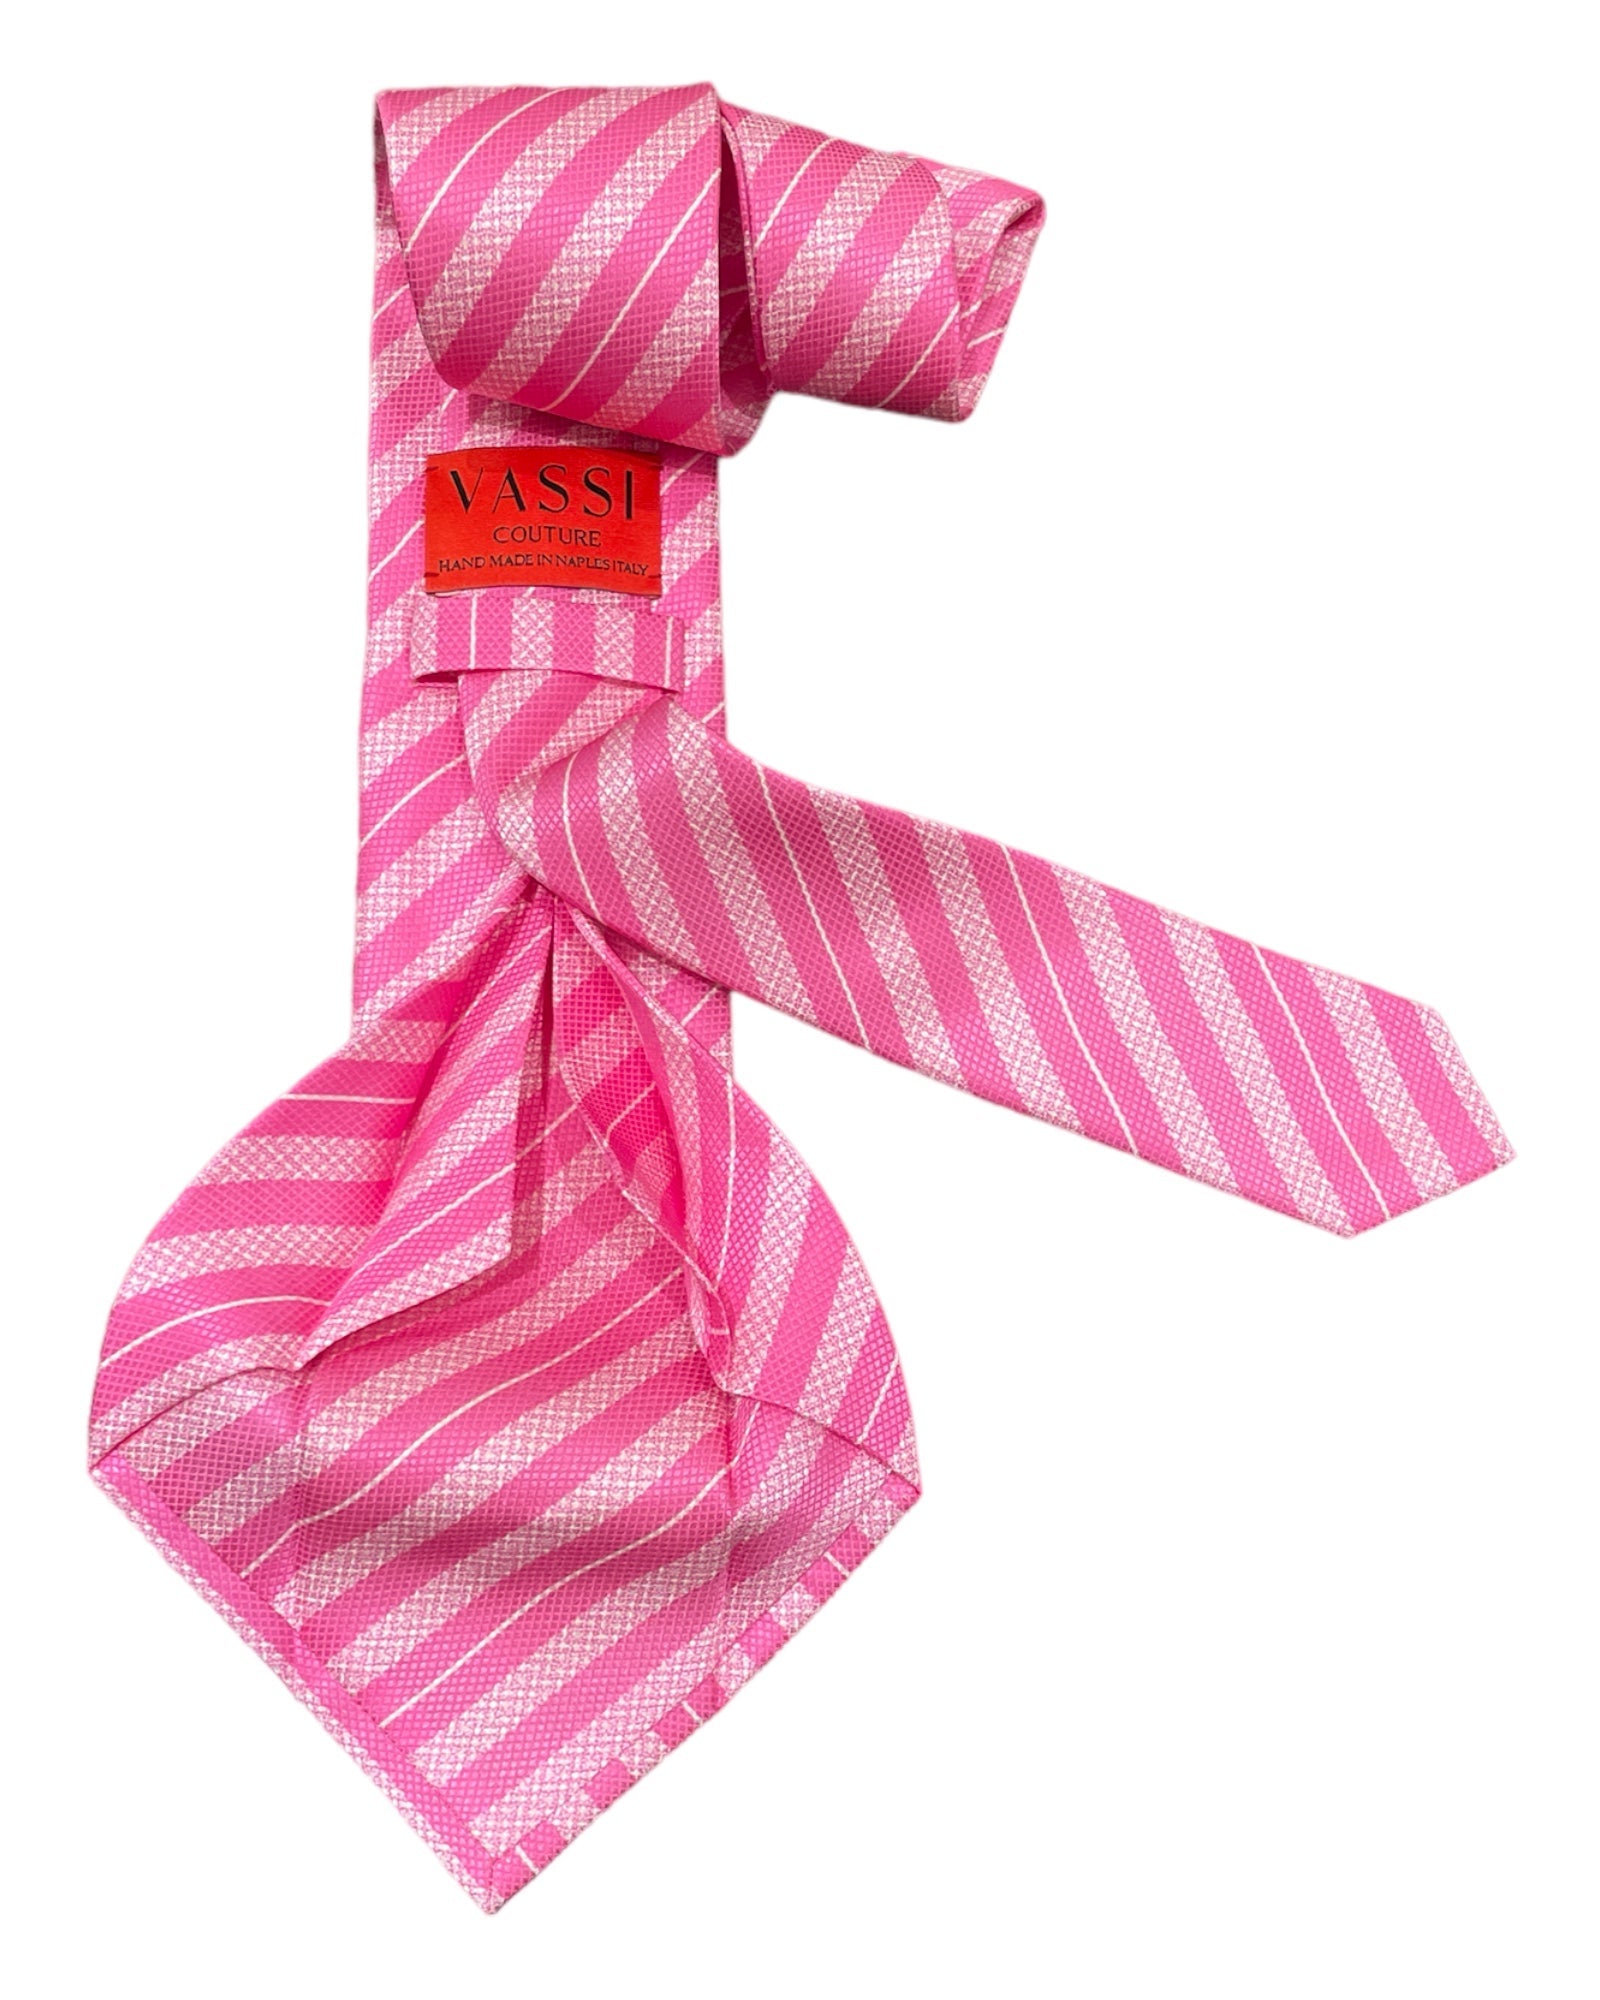 Seven-Fold Regimental Stripe Silk Tie - Pink TIES